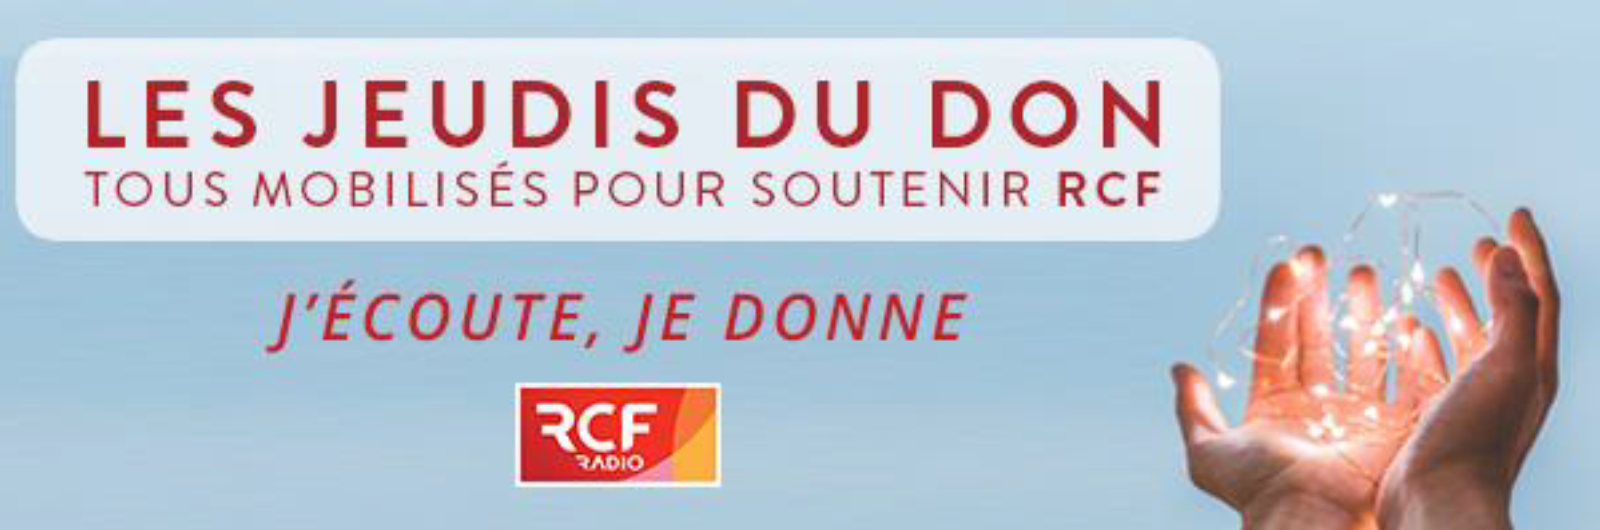 RCF lance "Les jeudis du don"